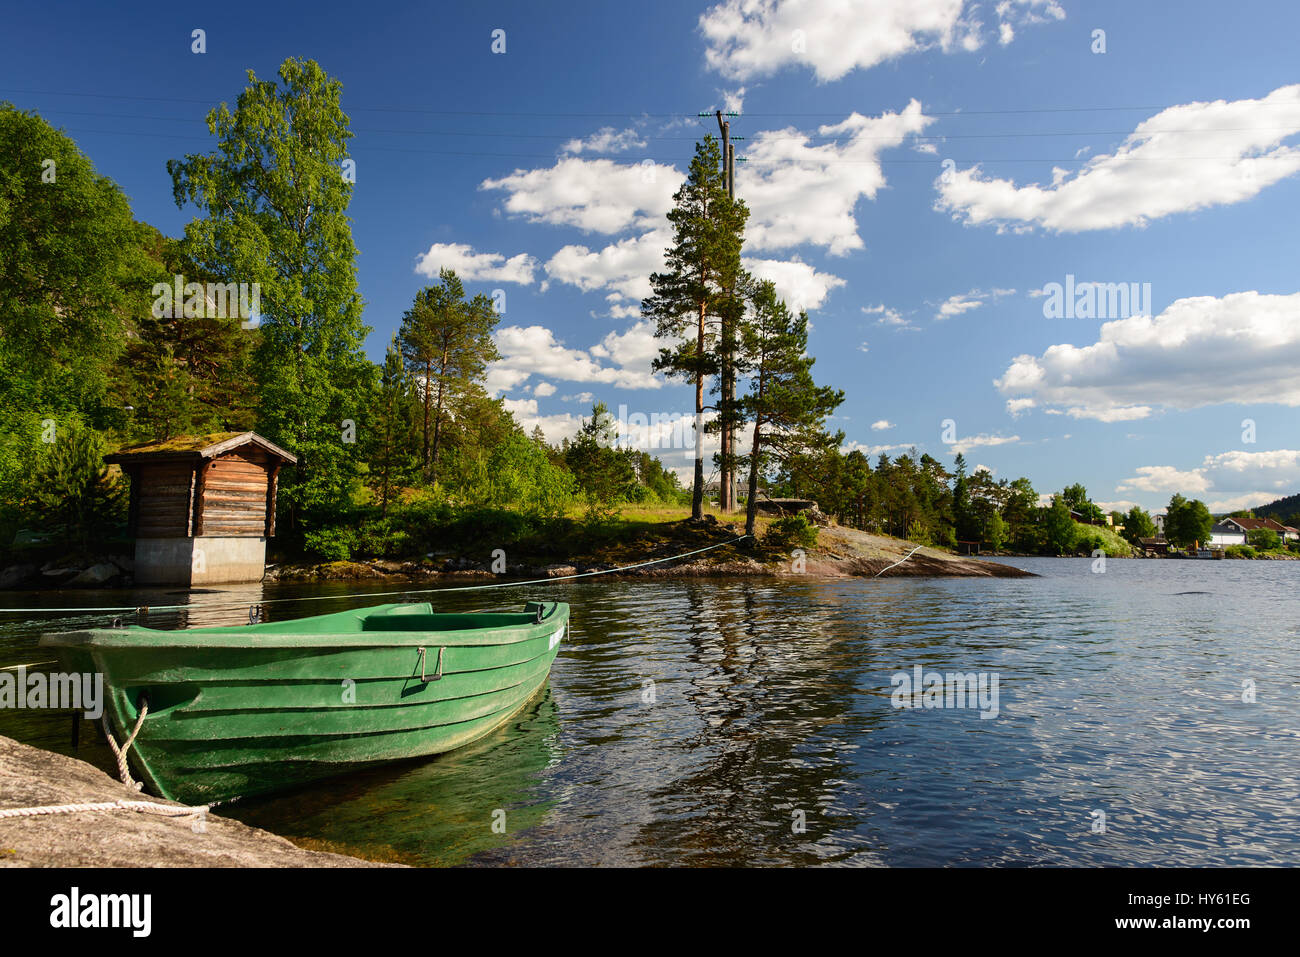 Un paesaggio con una verde canotto in acqua sotto alcuni alberi al confine del fiordo in Norvegia. Foto Stock